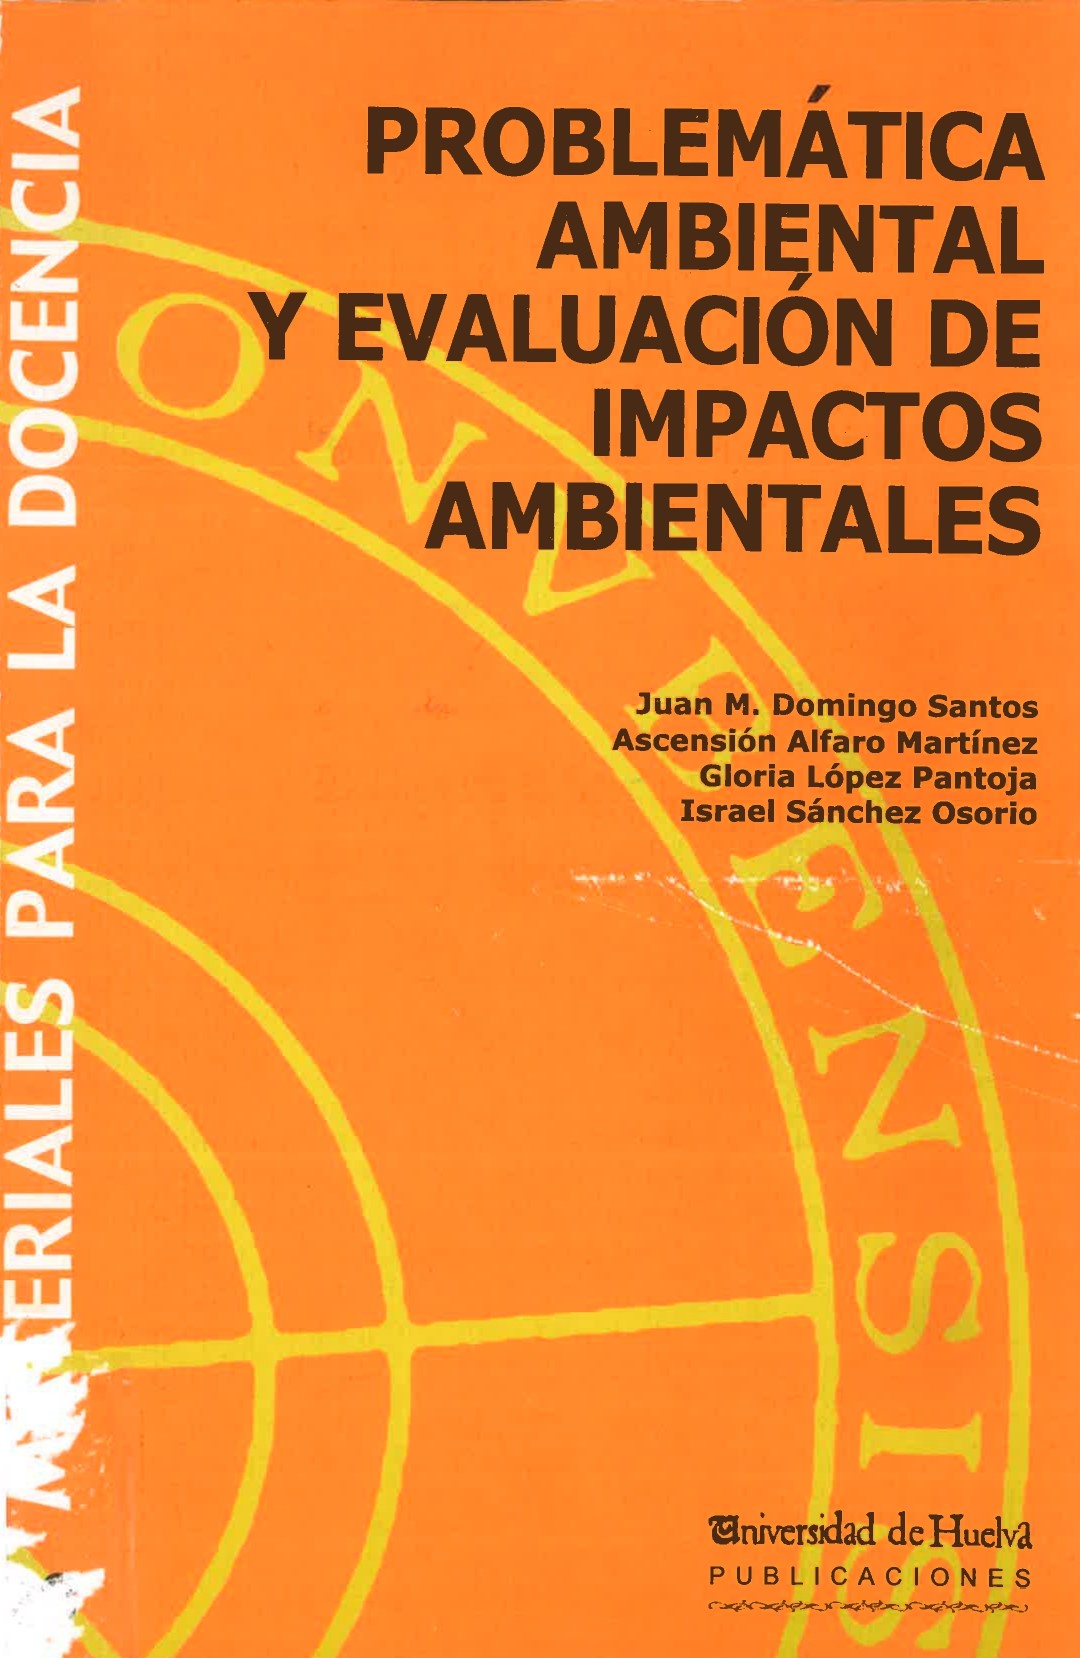 Imagen de portada del libro Problemática Ambiental y Evaluación de Impacto Ambientales